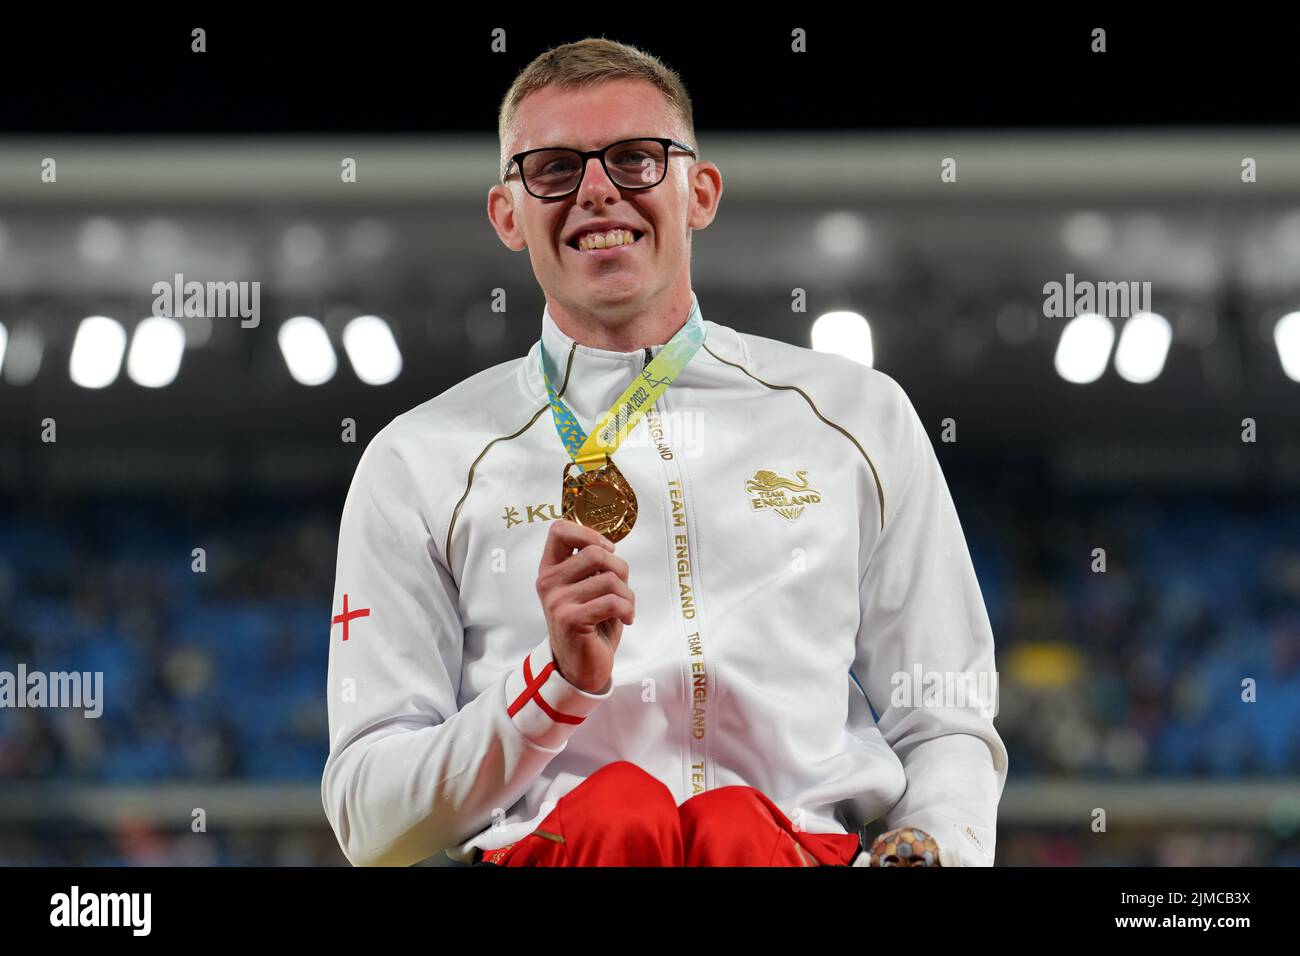 Der englische Nathan Maguire mit seiner Goldmedaille nach dem Herrenfinale T53/54 1500m im Alexander Stadium am achten Tag der Commonwealth Games 2022 in Birmingham. Bilddatum: Freitag, 5. August 2022. Stockfoto